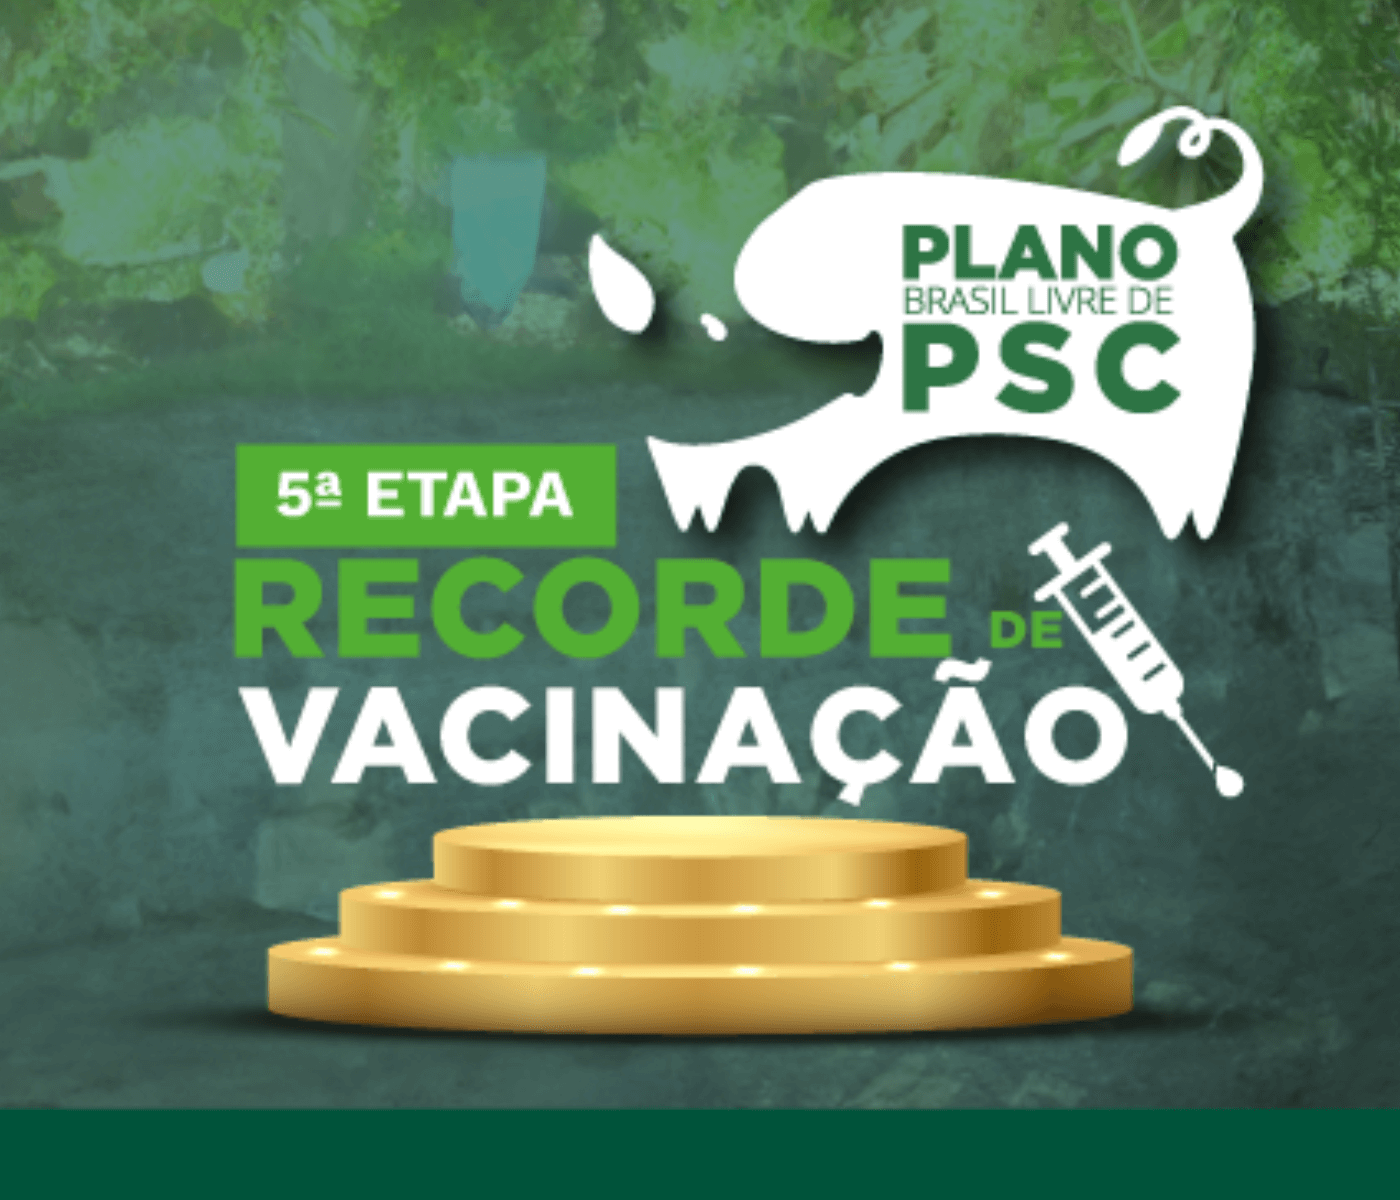 Alagoas tem recorde de imunização ao vacinar  mais de 147 mil suínos na 5ª e última etapa de vacinação contra PSC 